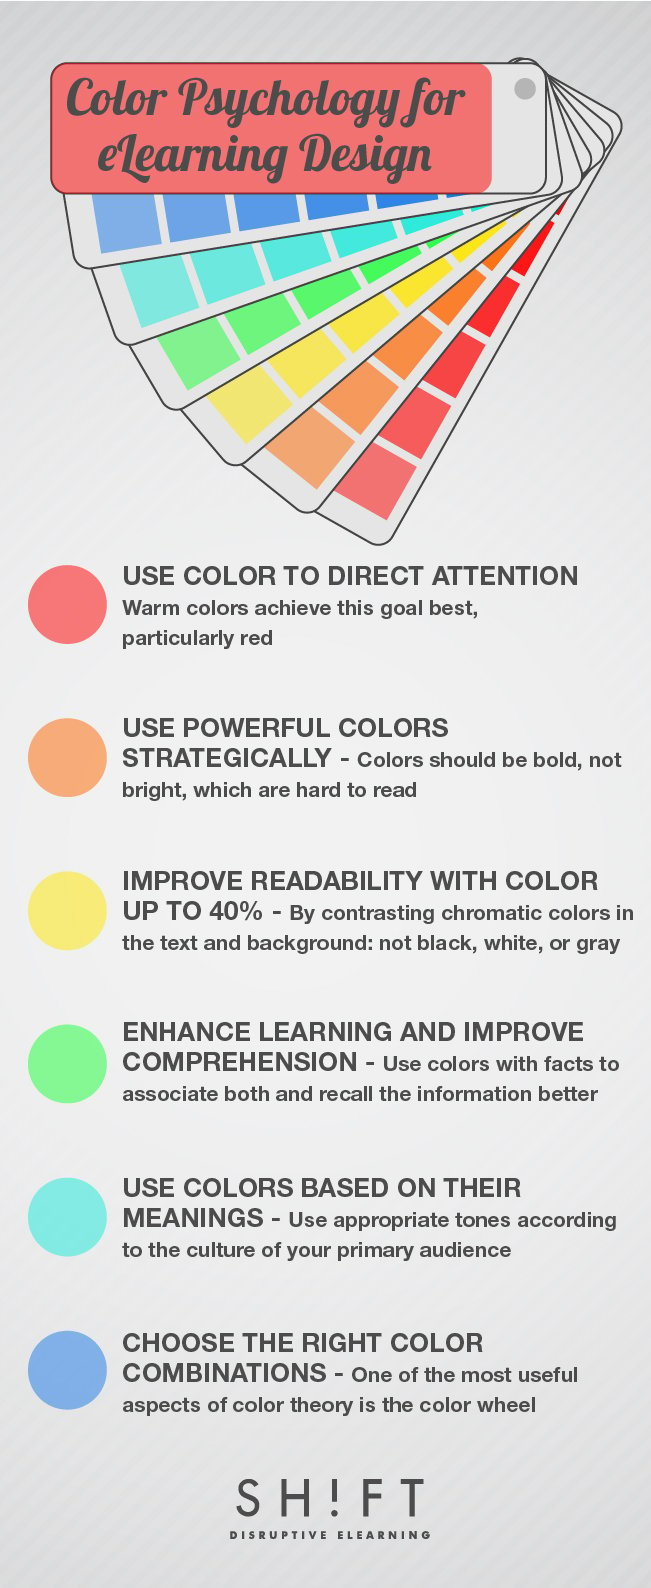 color psychology for eLearning design